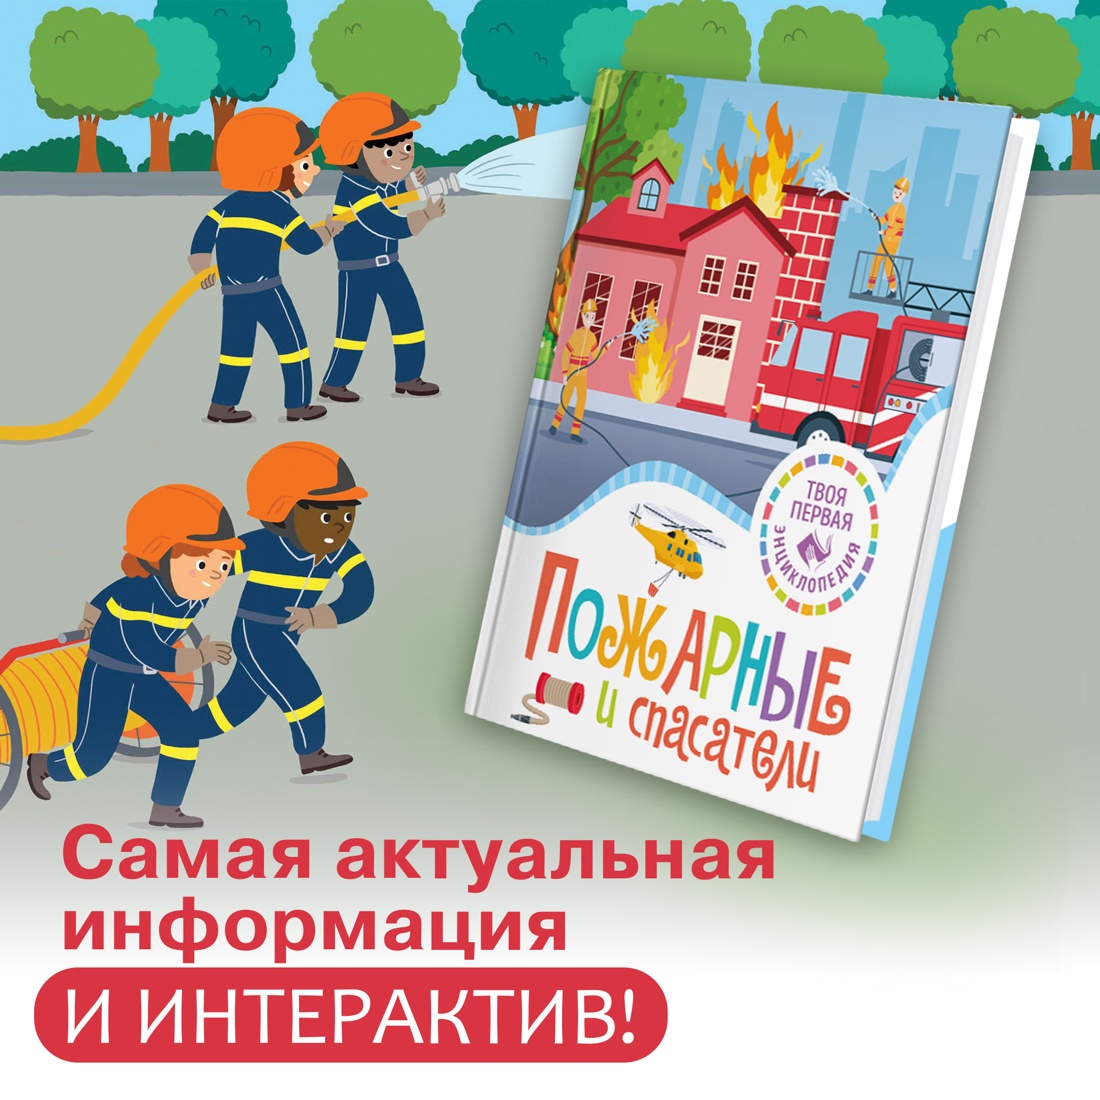 Промо материал к книге "Пожарные и спасатели" №0